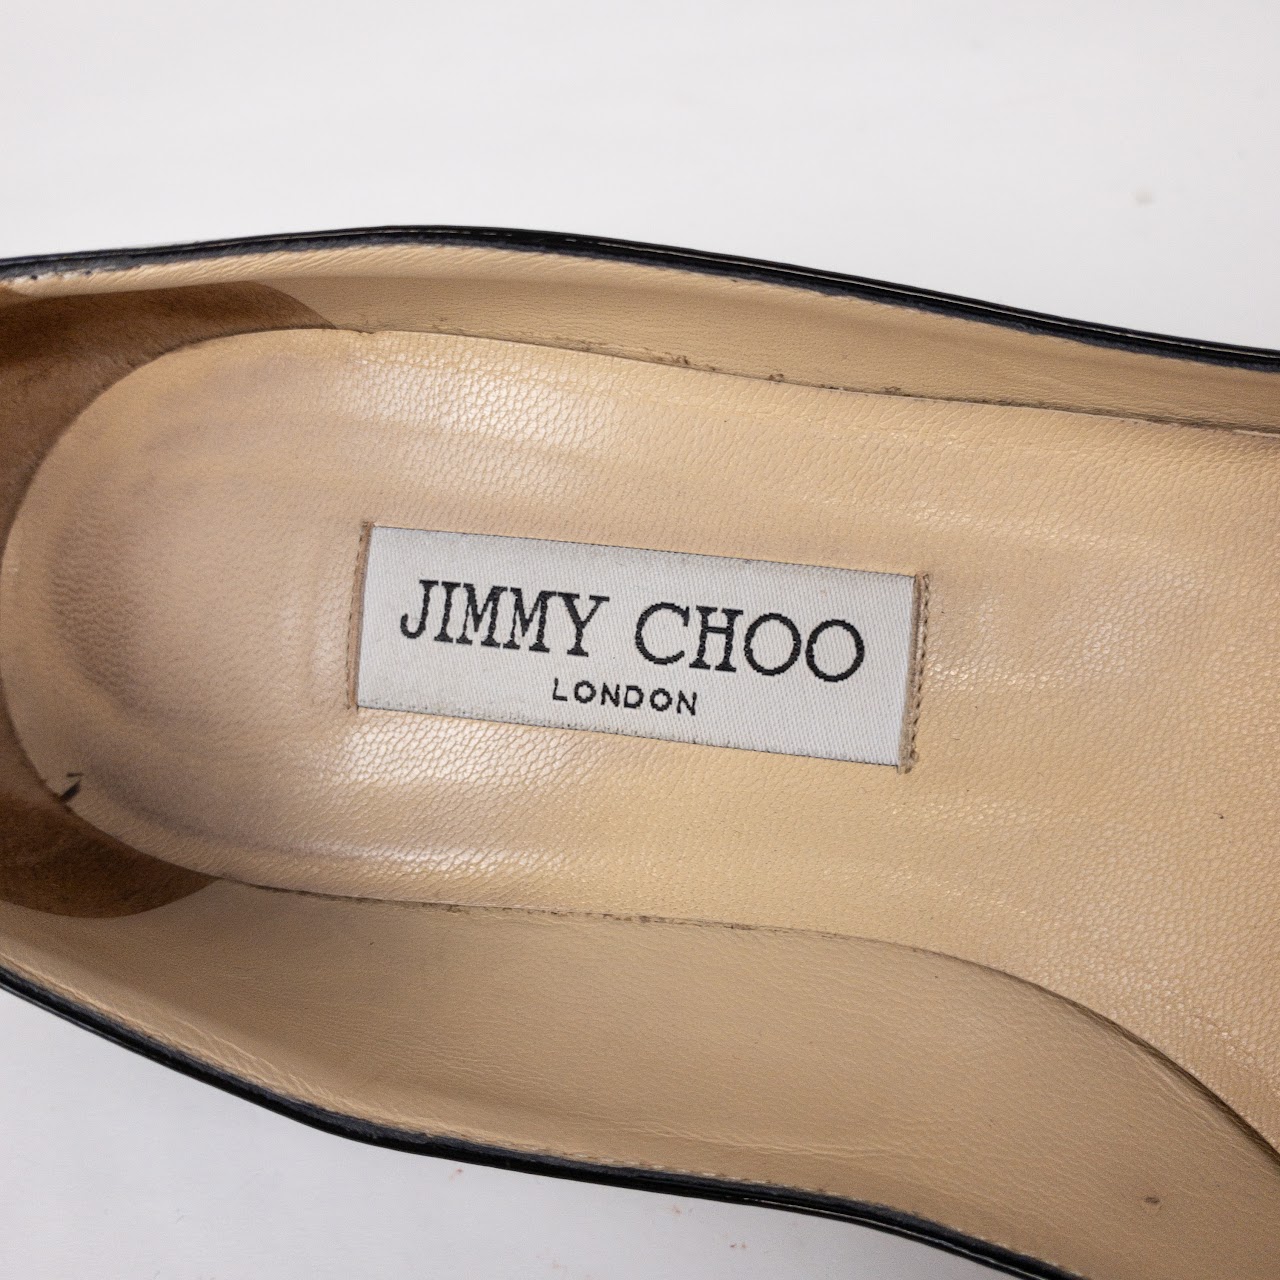 Jimmy Choo Patent Leather Kitten Heels